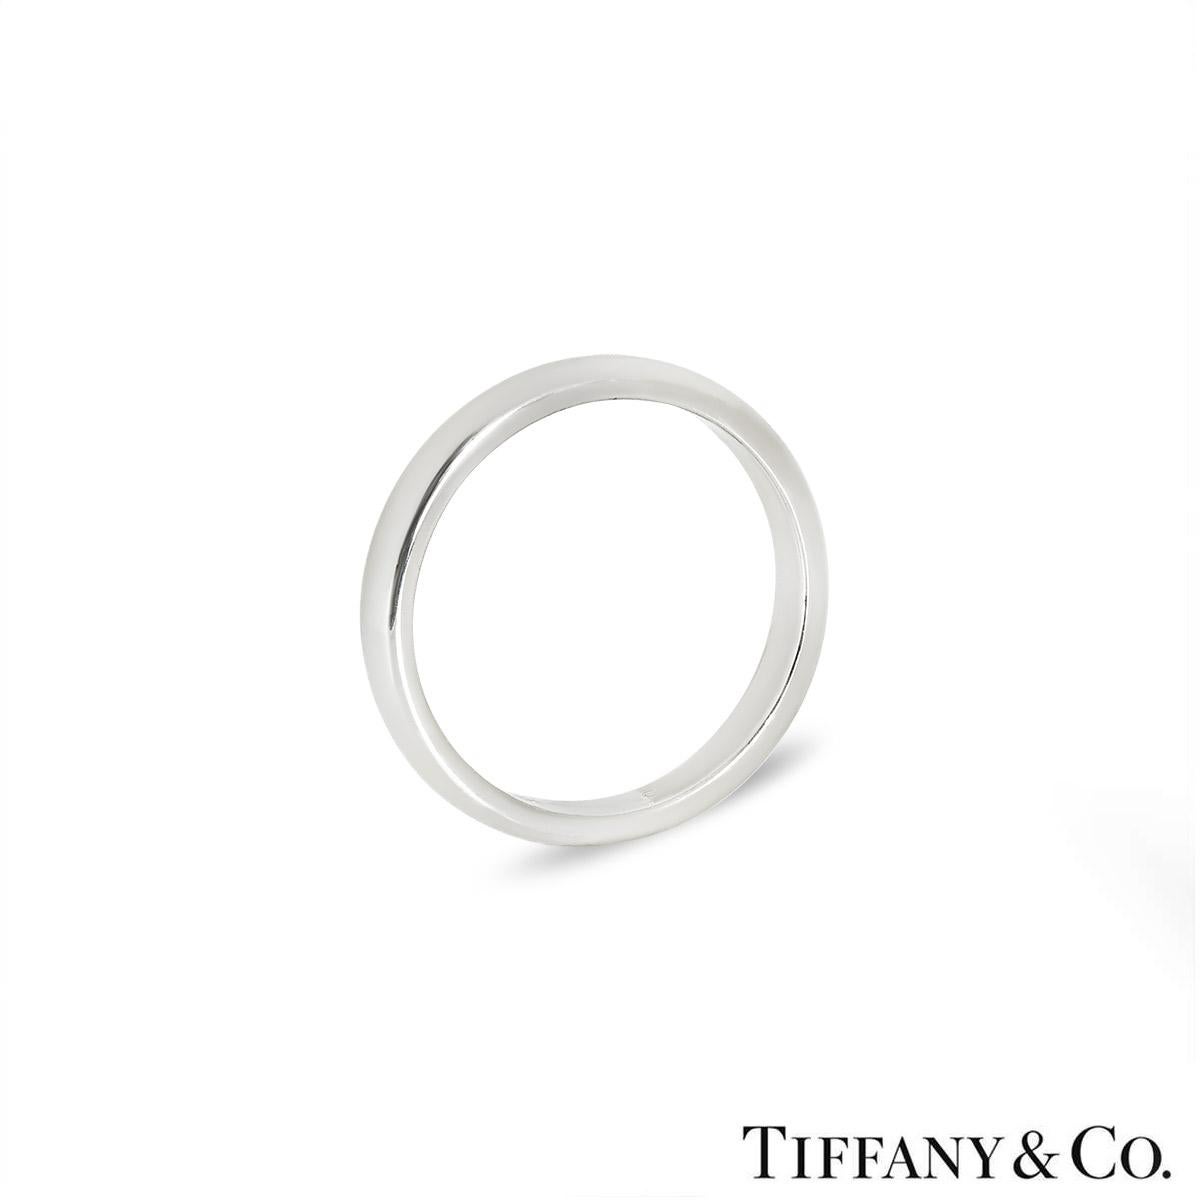 Une alliance classique en platine de Tiffany & Co. de la collection Tiffany Forever. Le bracelet unisexe mesure 3 mm de large, a un poids brut de 4,85 grammes et correspond actuellement à la taille UK L½ - EU 51½ mais peut être ajusté pour un